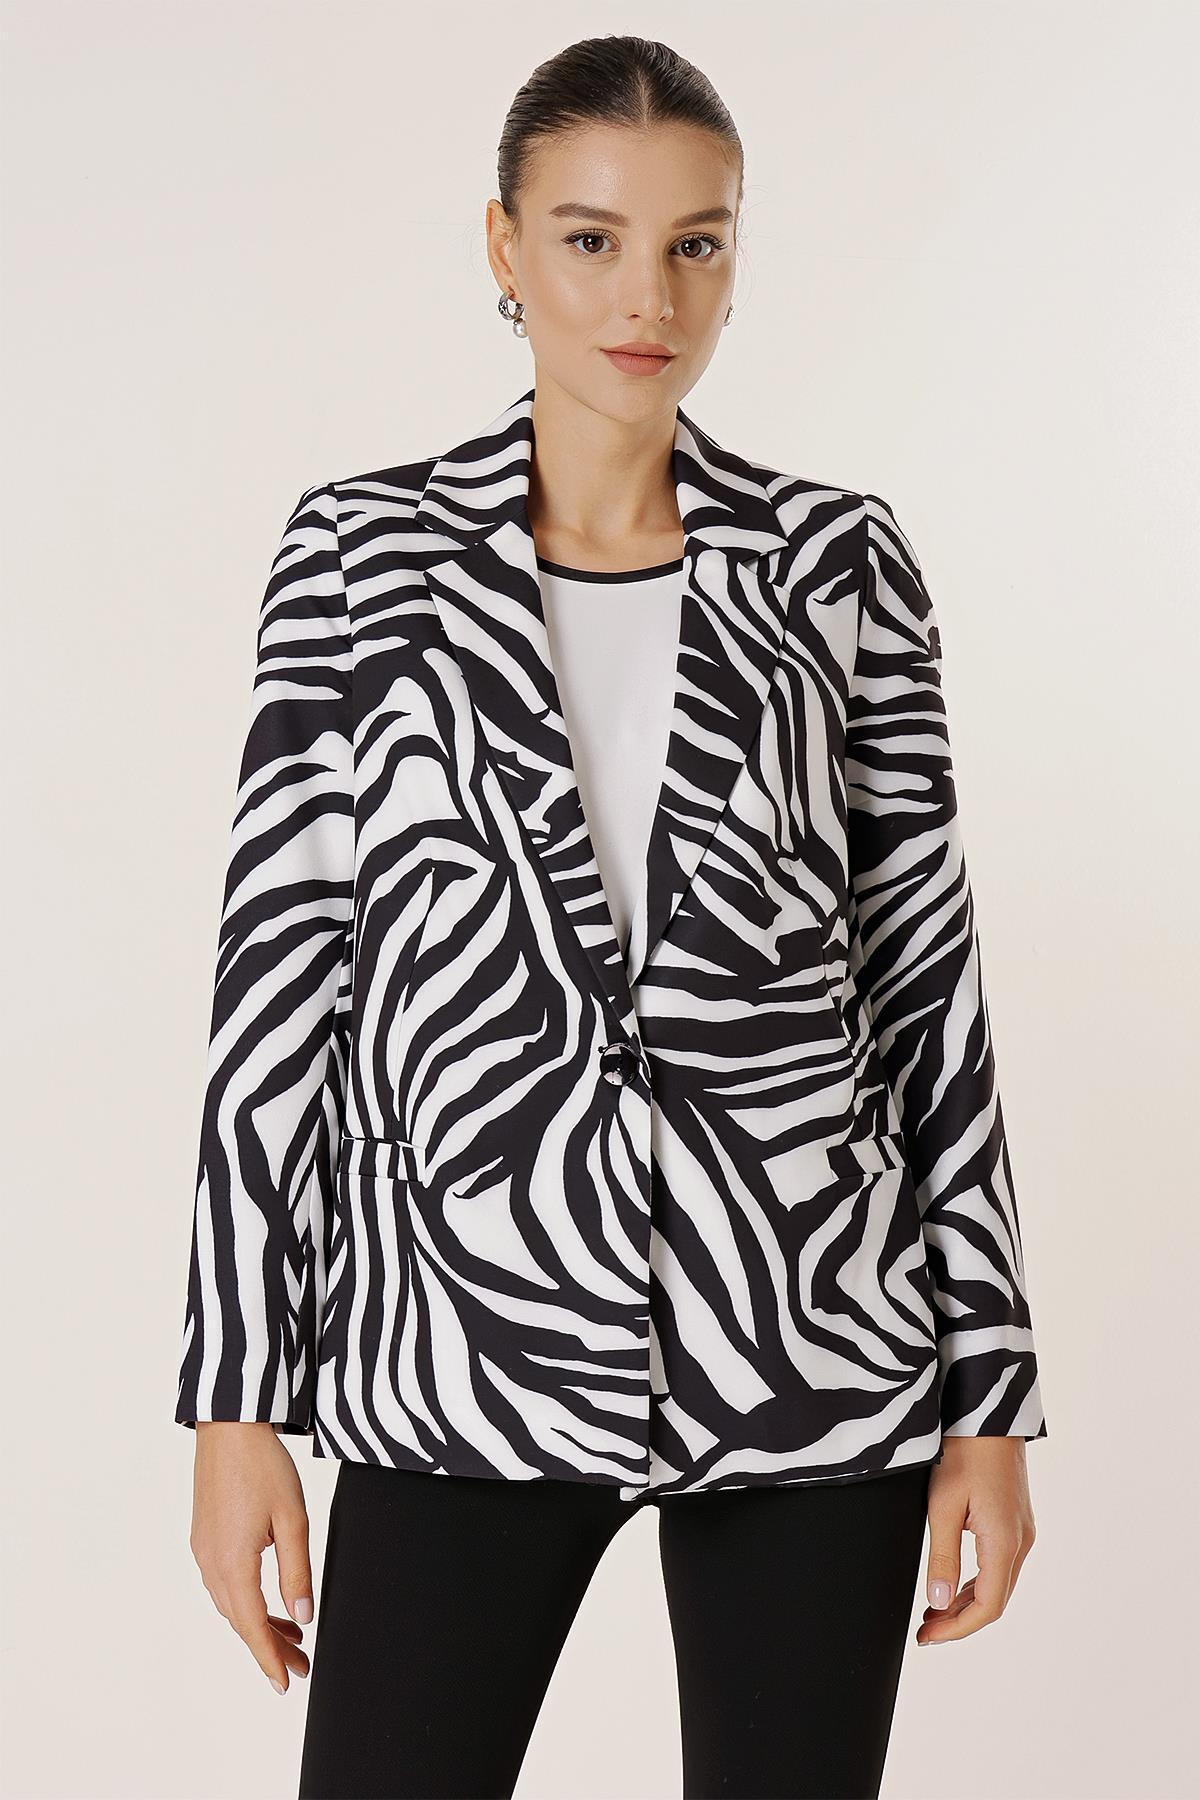 Levně By Saygı One Button Lined Zebra Pattern Comfort Fit Jacket